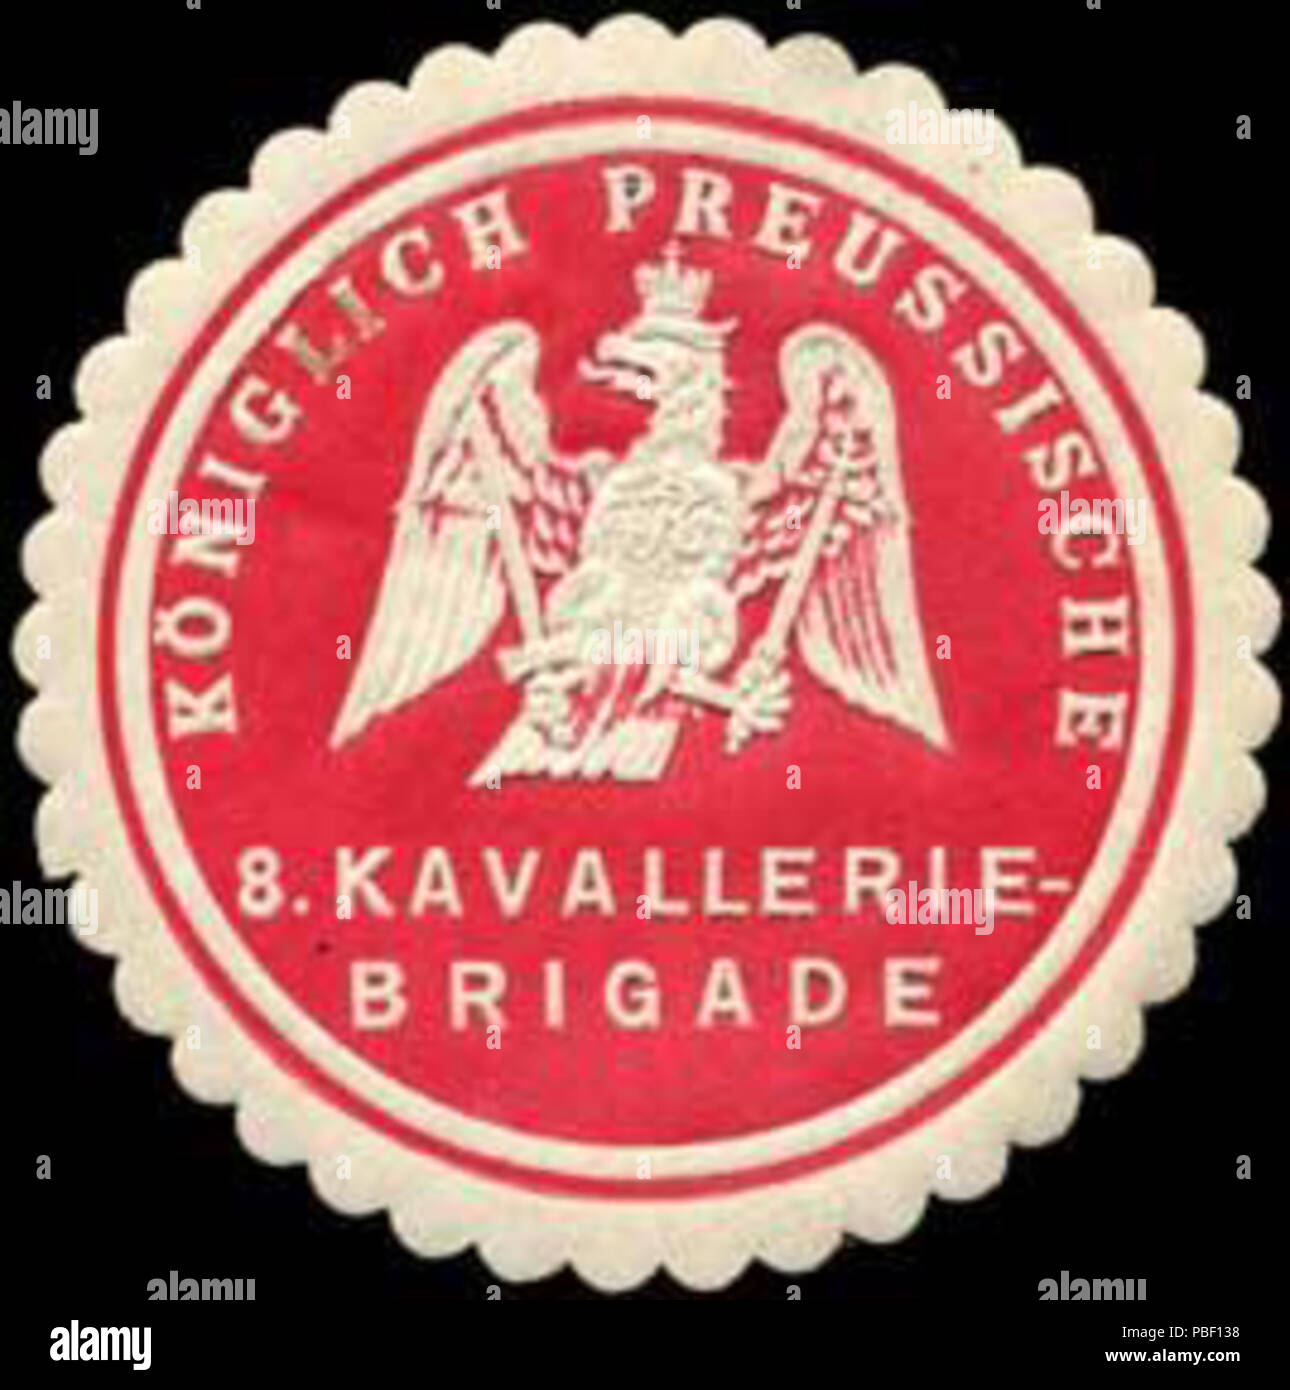 Alte Briefverschlussmarke aus Papier, welche seit ca. 1850 von Behoerden, Anwaelten, Notaren und Firmen zum verschliessen der Post verwendet wurde. 1451 Siegelmarke Königlich Preussische 8. Kavallerie - Brigade W0238327 Stock Photo